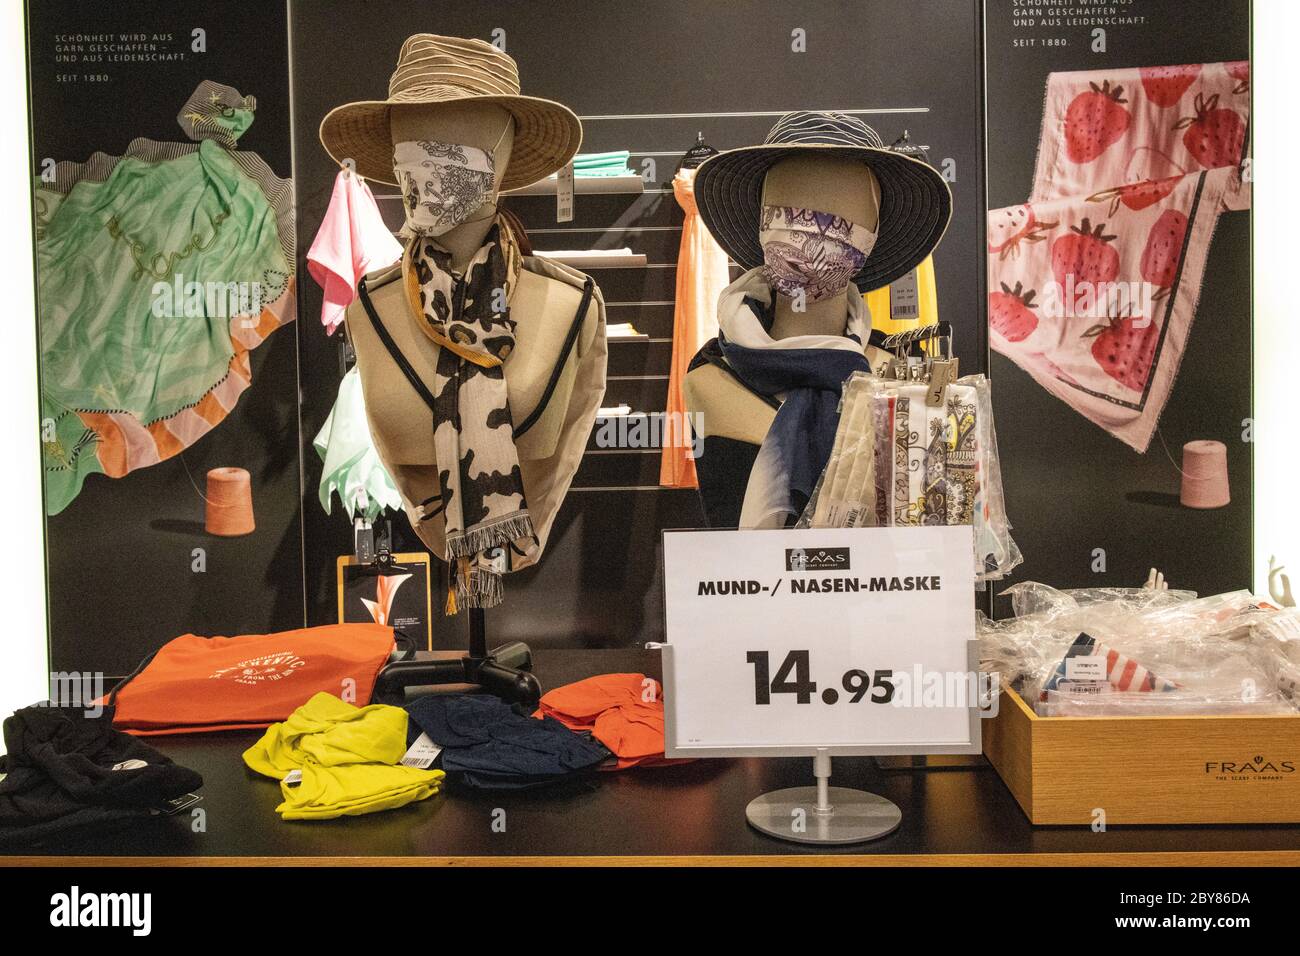 Le département de mode vend des masques dans sa section des vêtements pendant la pandémie du coronavirus, car les magasins s'ouvrent au public, Allemagne, Europe Banque D'Images